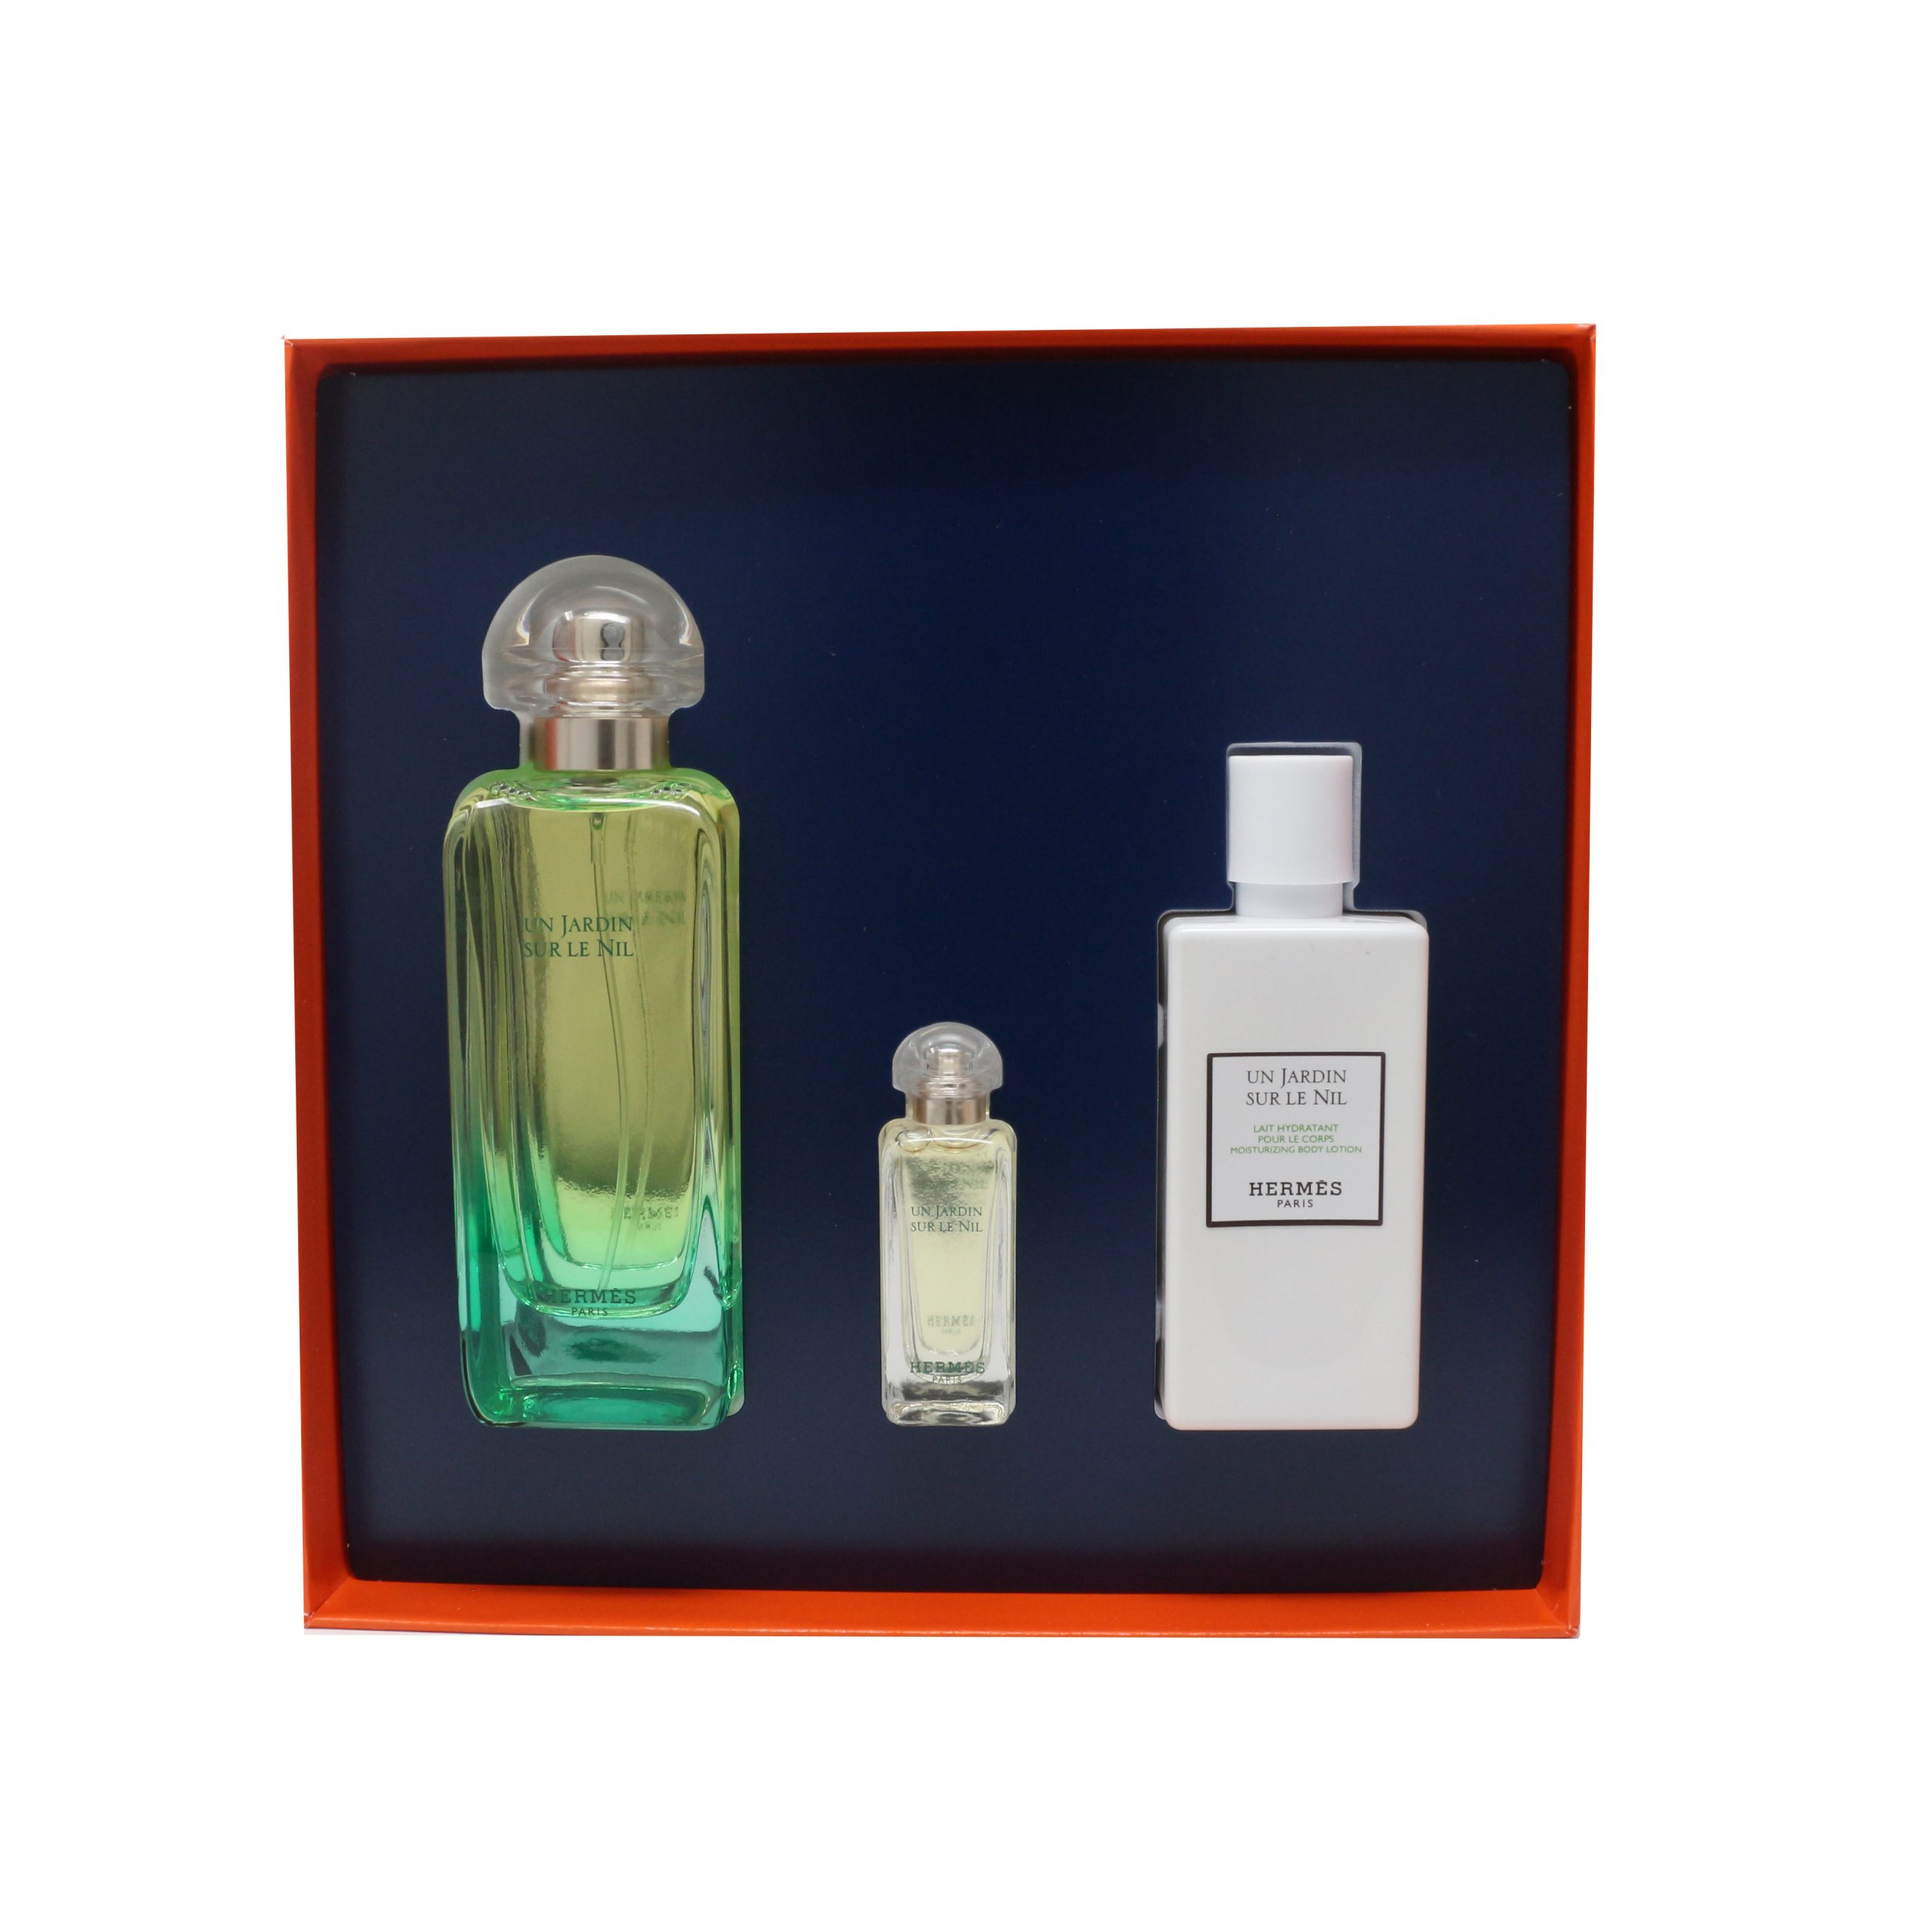 Details About Hermes Un Jardin Sur Le Nil 3-Piece Gift Set New In Box pour Hermes Perfume Un Jardin Sur Le Nil